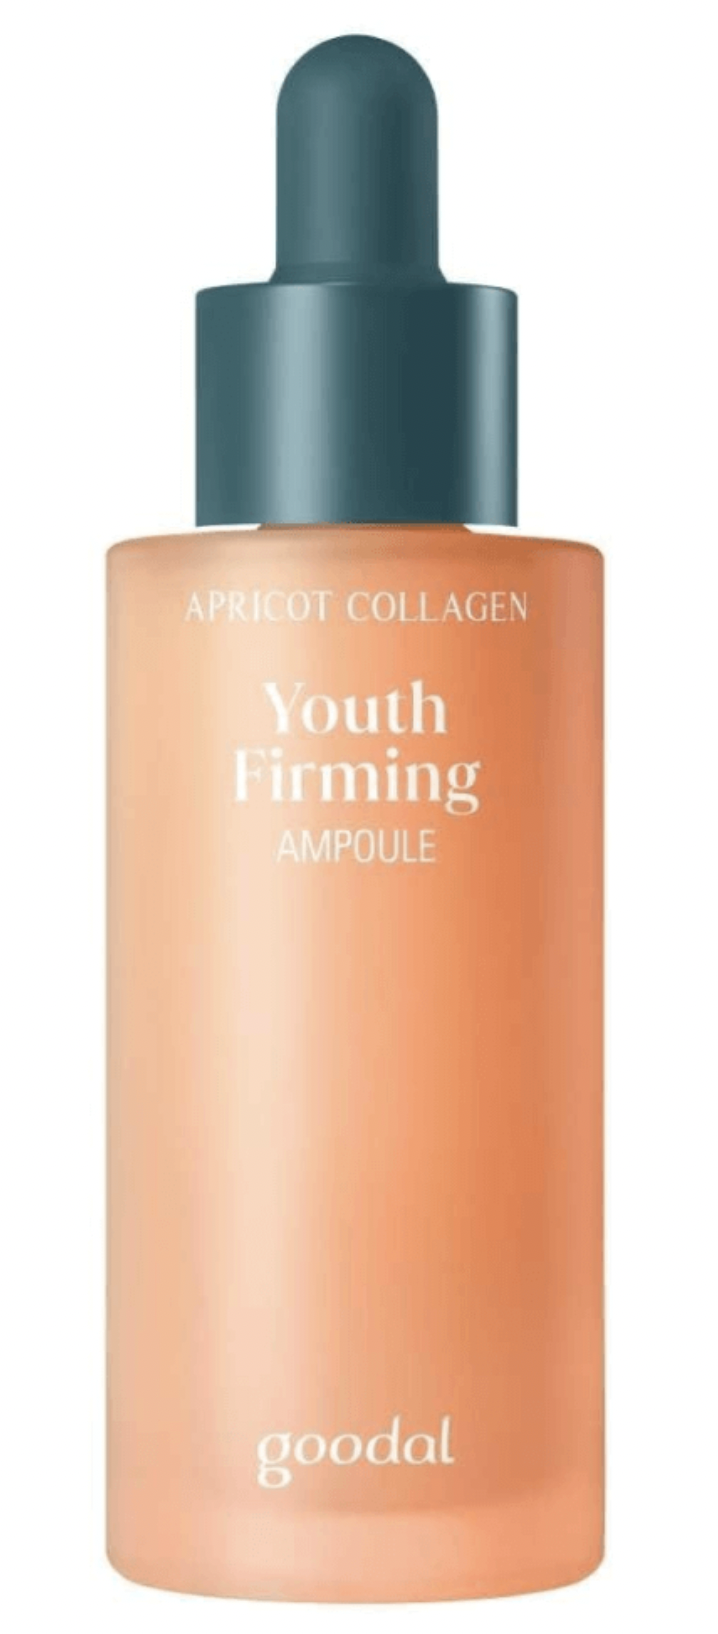 Укрепляющая липосомная ампула Goodal с абрикосом Apricot Collagen Youth Firming Ampoule экстракт прополиса водный продукт 3 100 мл